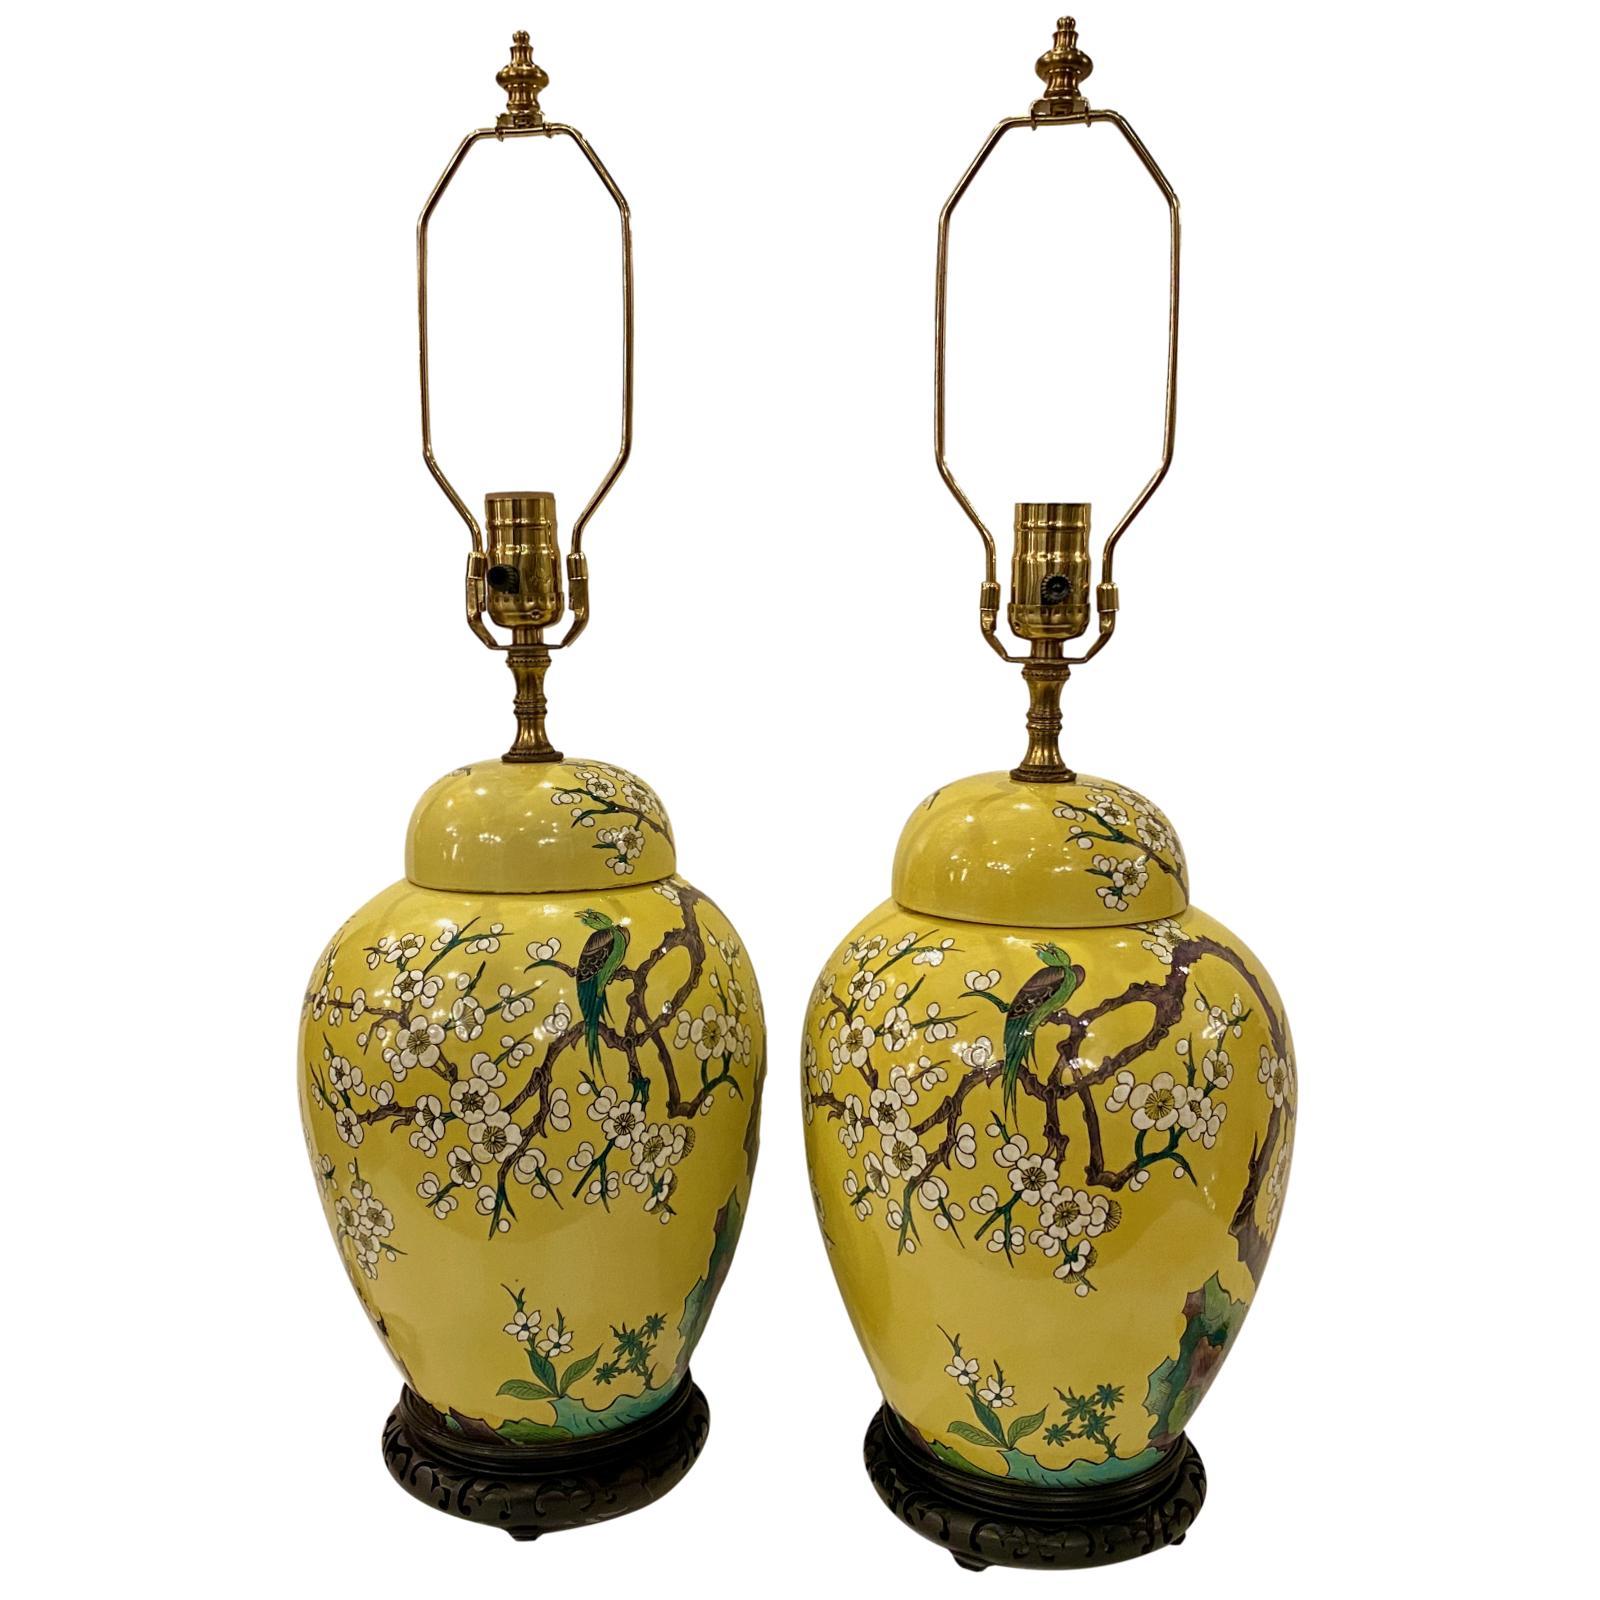 Paire de lampes de table en porcelaine peinte à la main en forme de pot à gingembre, datant des années 1920, avec des motifs d'arbres et d'oiseaux fleuris et des bases en bois.

Mesures :
Hauteur du corps : 14